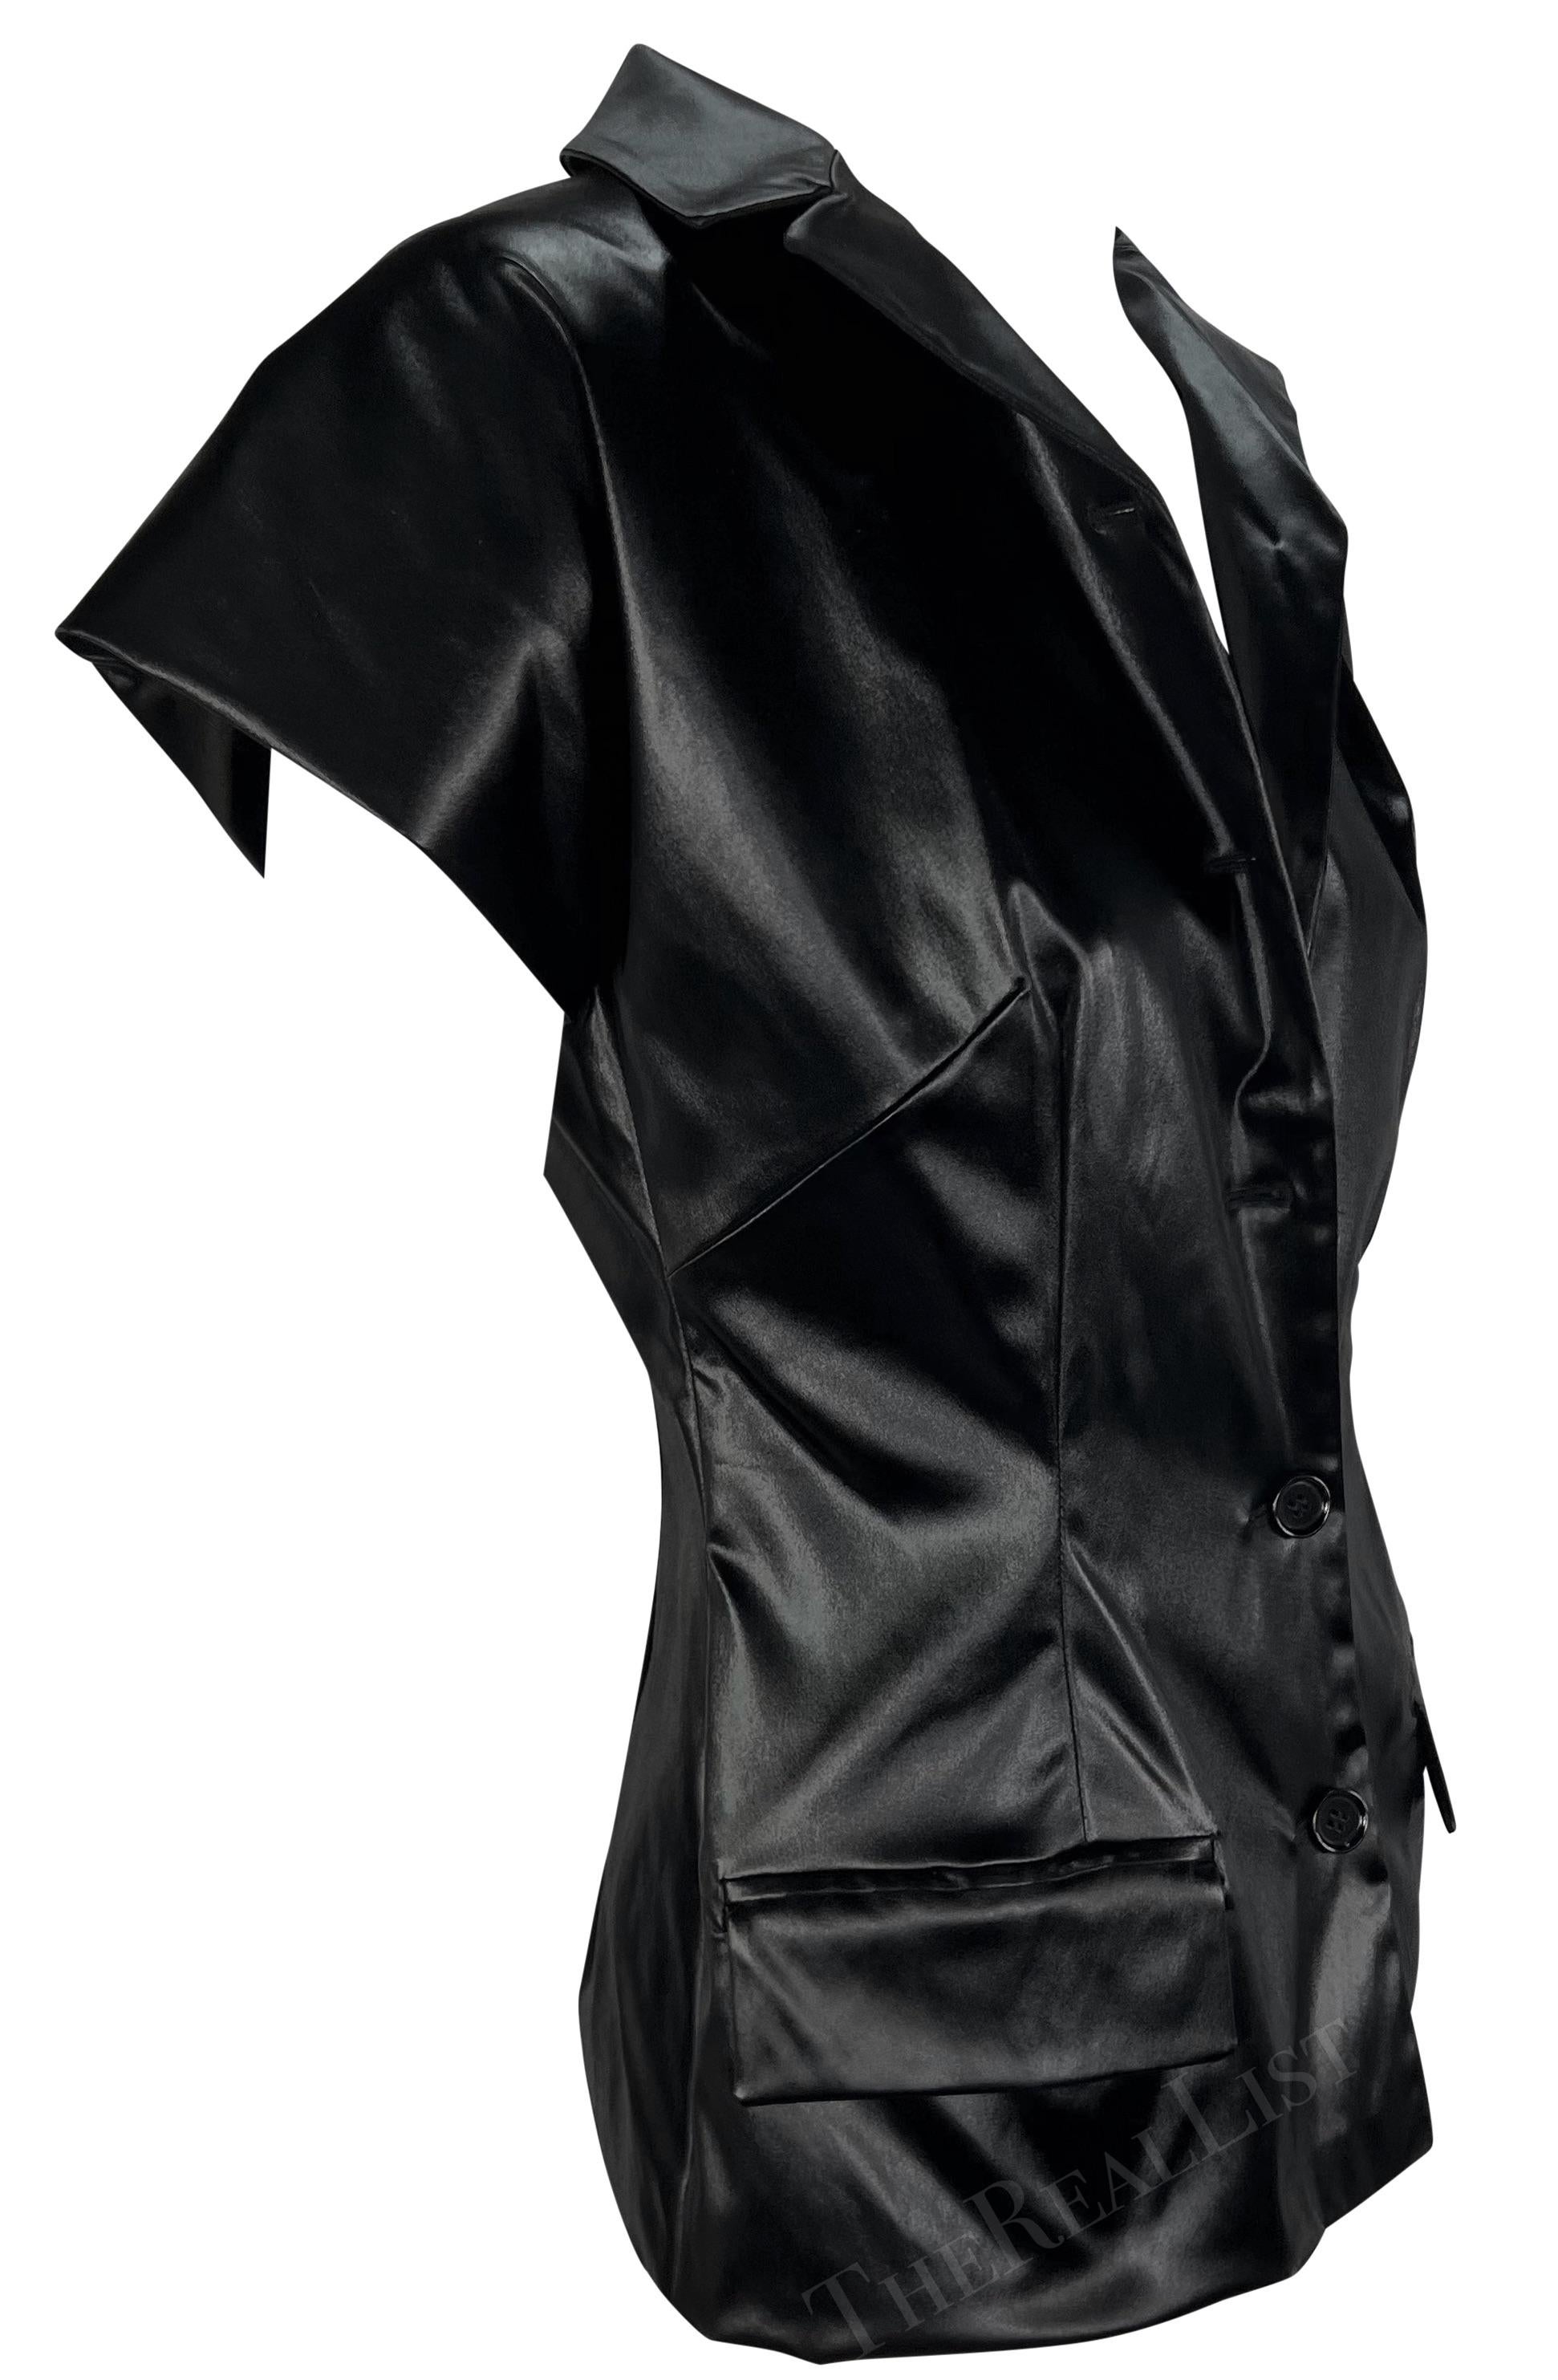 S/S 1999 Dolce & Gabbana Runway Wet Look Short Sleeve Black Jacket Top For Sale 2